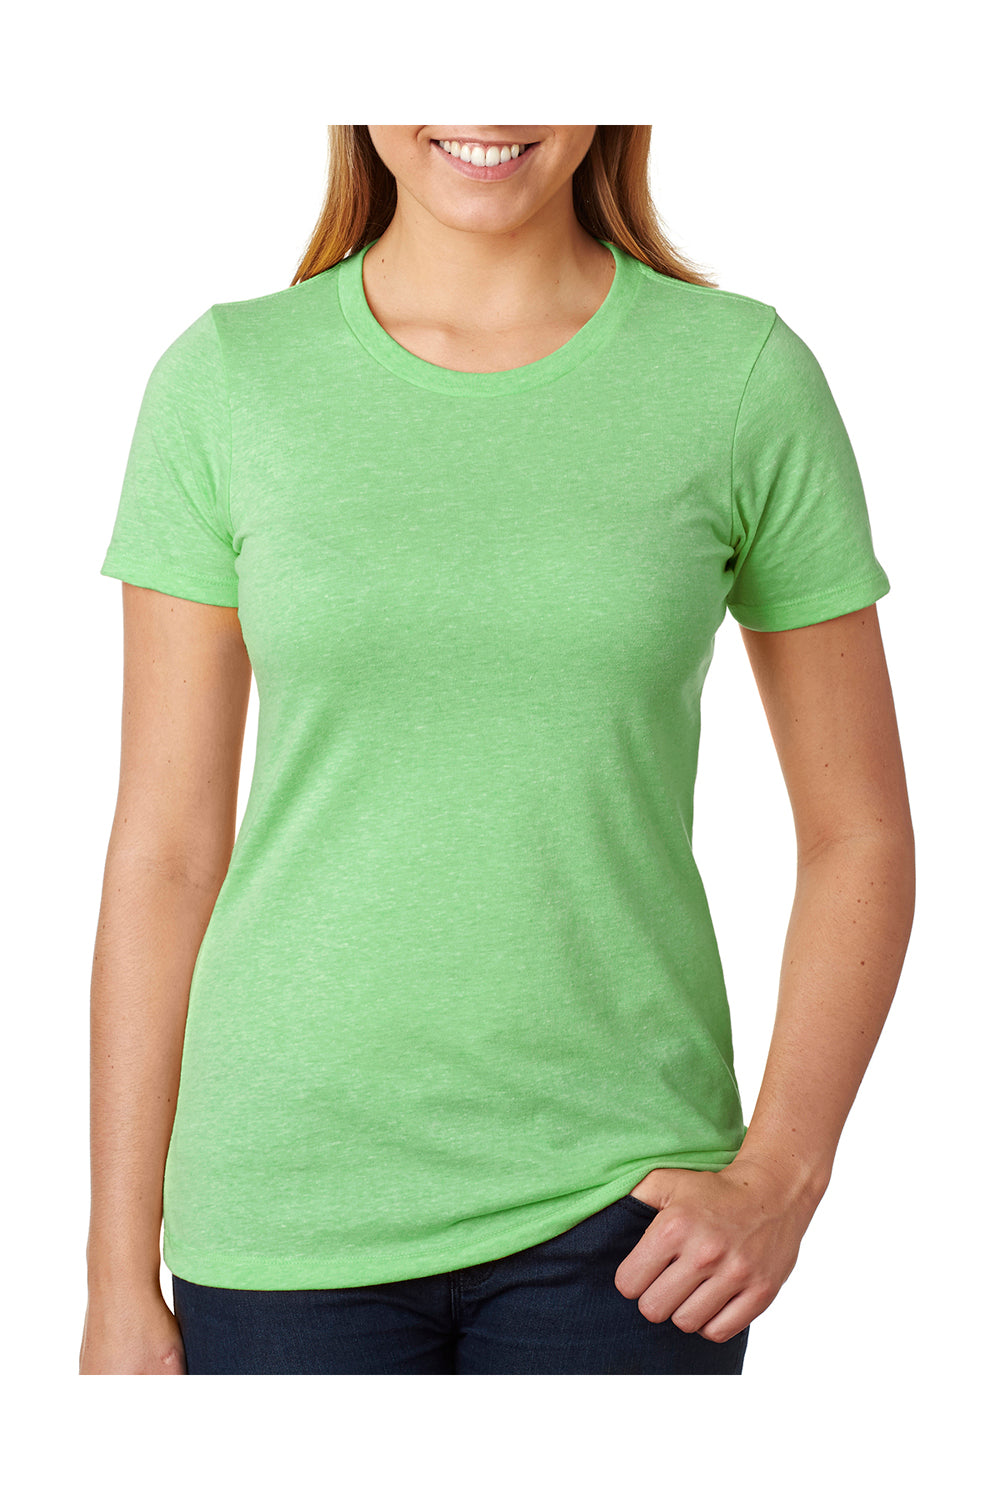 Next Level 6610 Womens CVC Jersey Short Sleeve Crewneck T-Shirt Apple Green Front